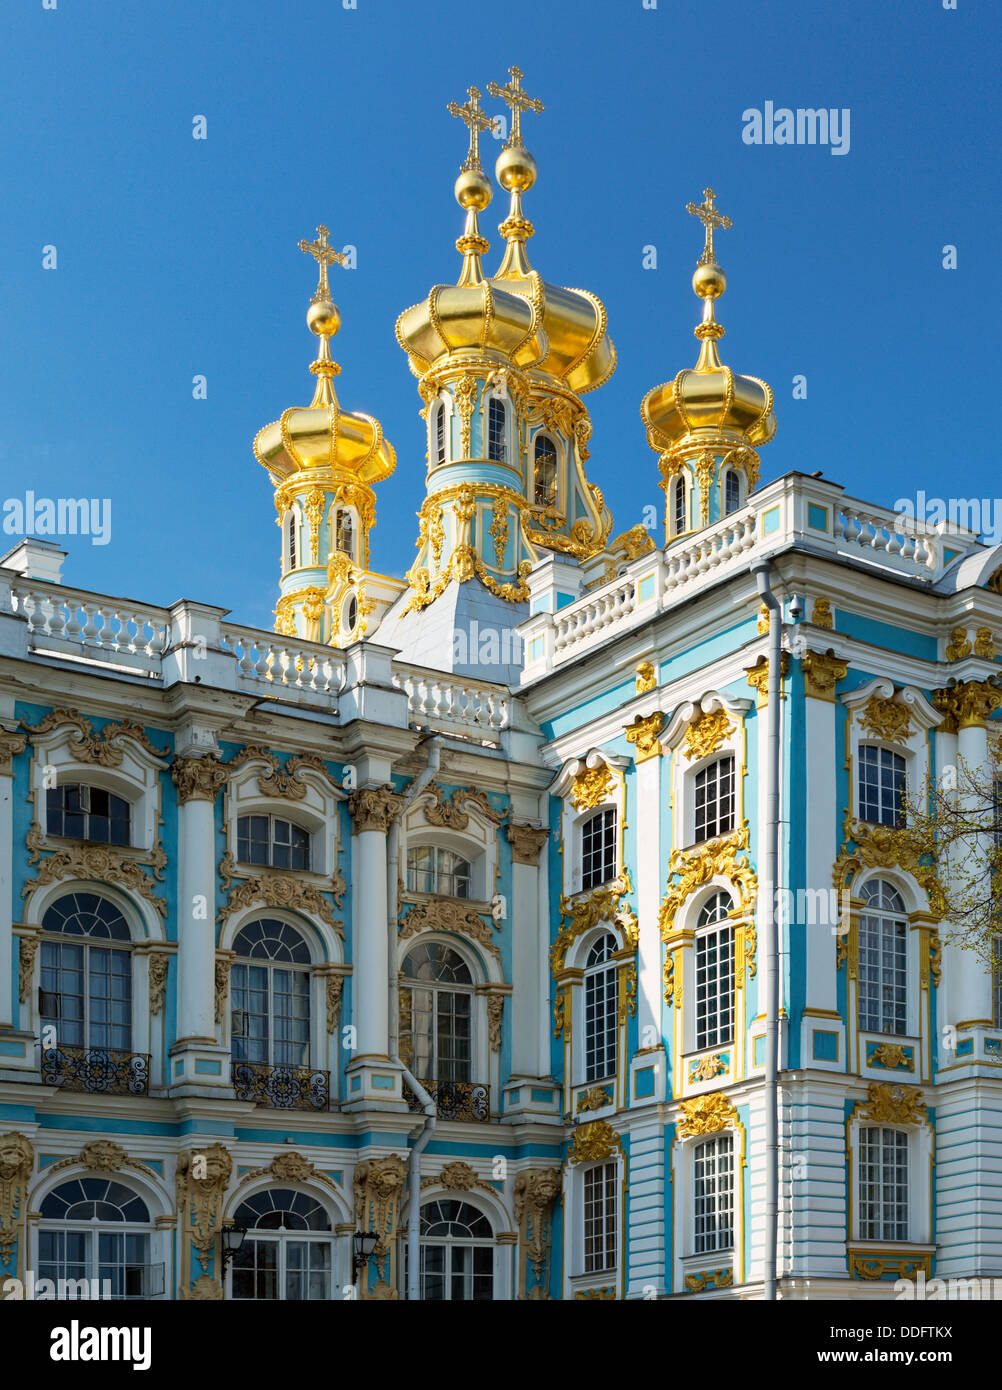 Les bâtiments de l'architecture palais Catherine de Russie st petersburg or. billet d'endroits style baroque lieu célèbre blue mansion chur Banque D'Images